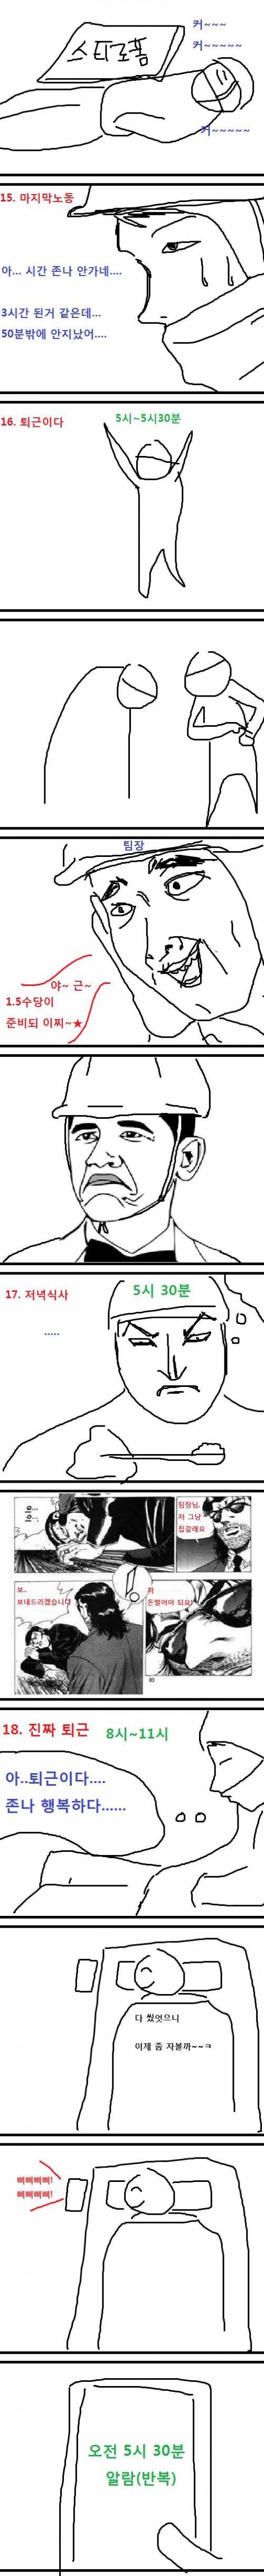 조선소에서 막노동 하는 만화.jpg